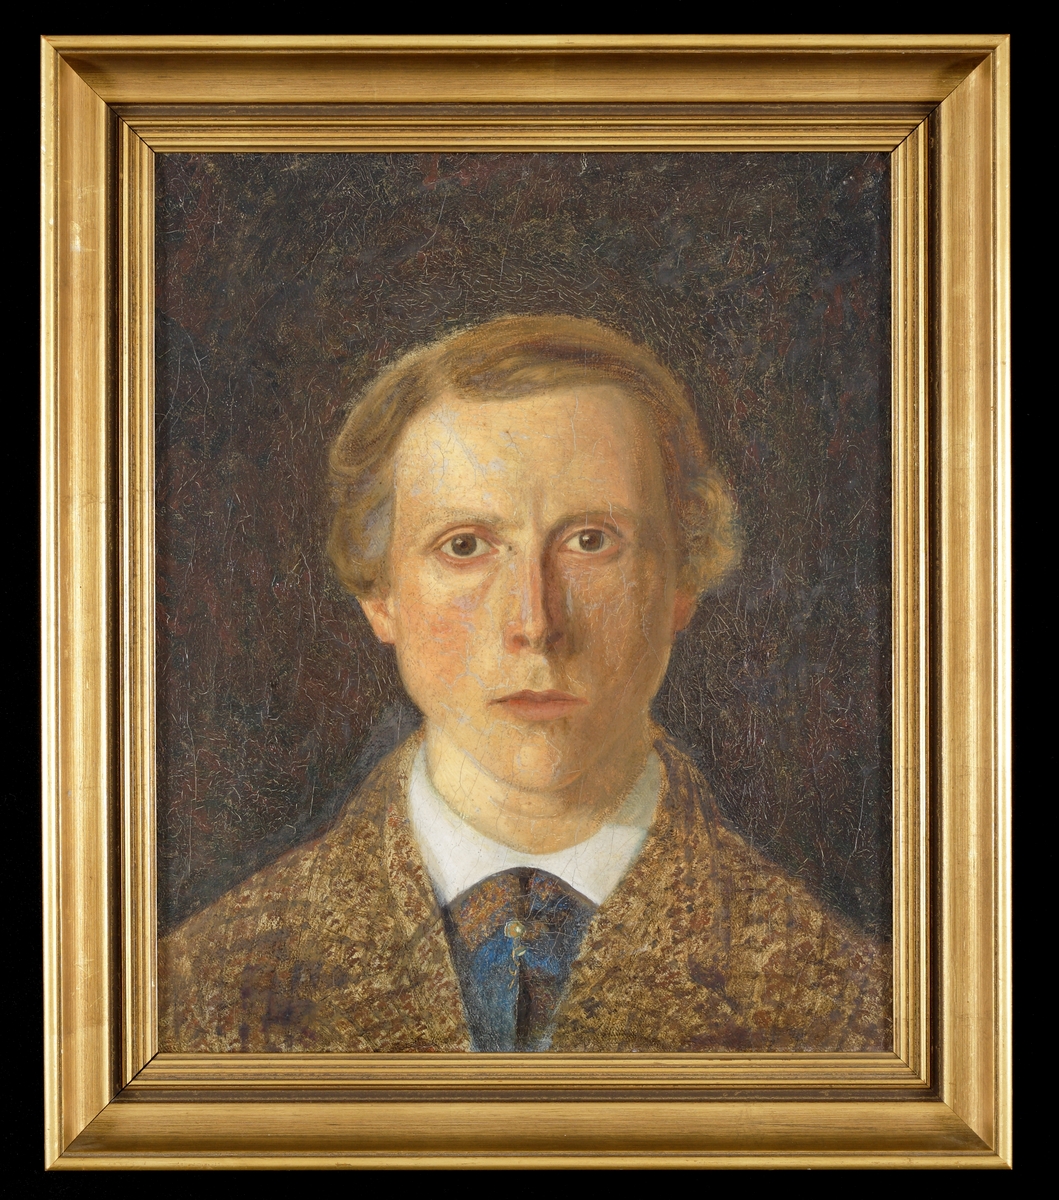 Porträtt av ung man i spräcklig brun tweedkostym och vit skjorta.
Bröstbild, en face. 
Självporträtt av Anders Didoff 1867.